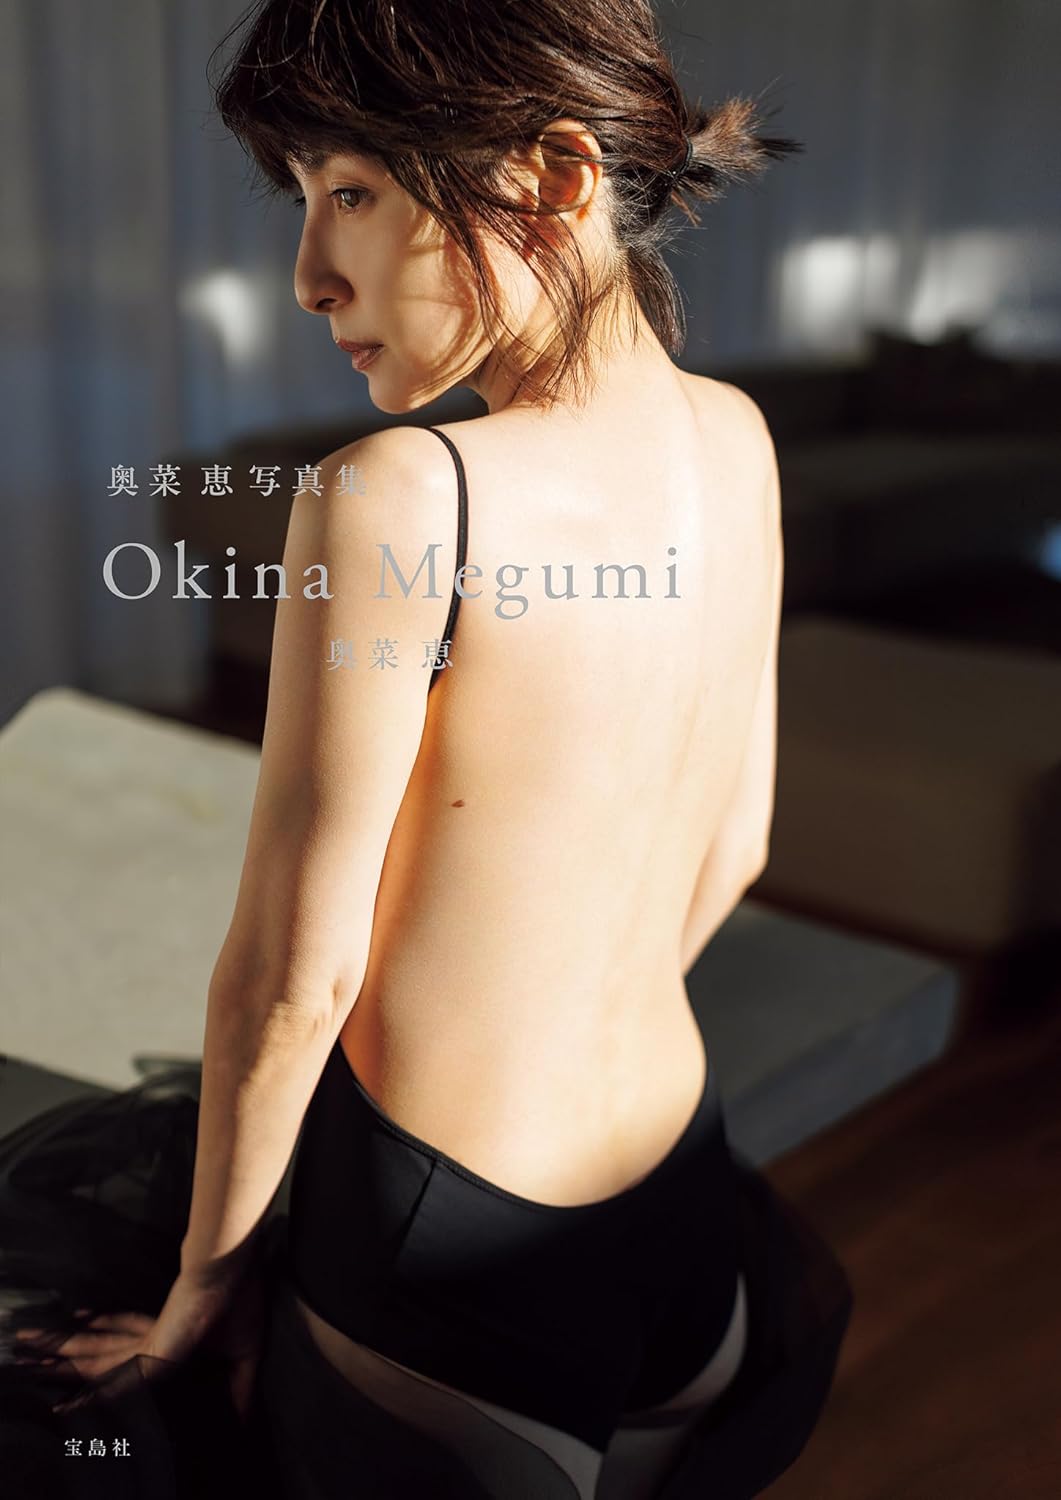 Megumi Okina Photo Book "Okina Megumi"